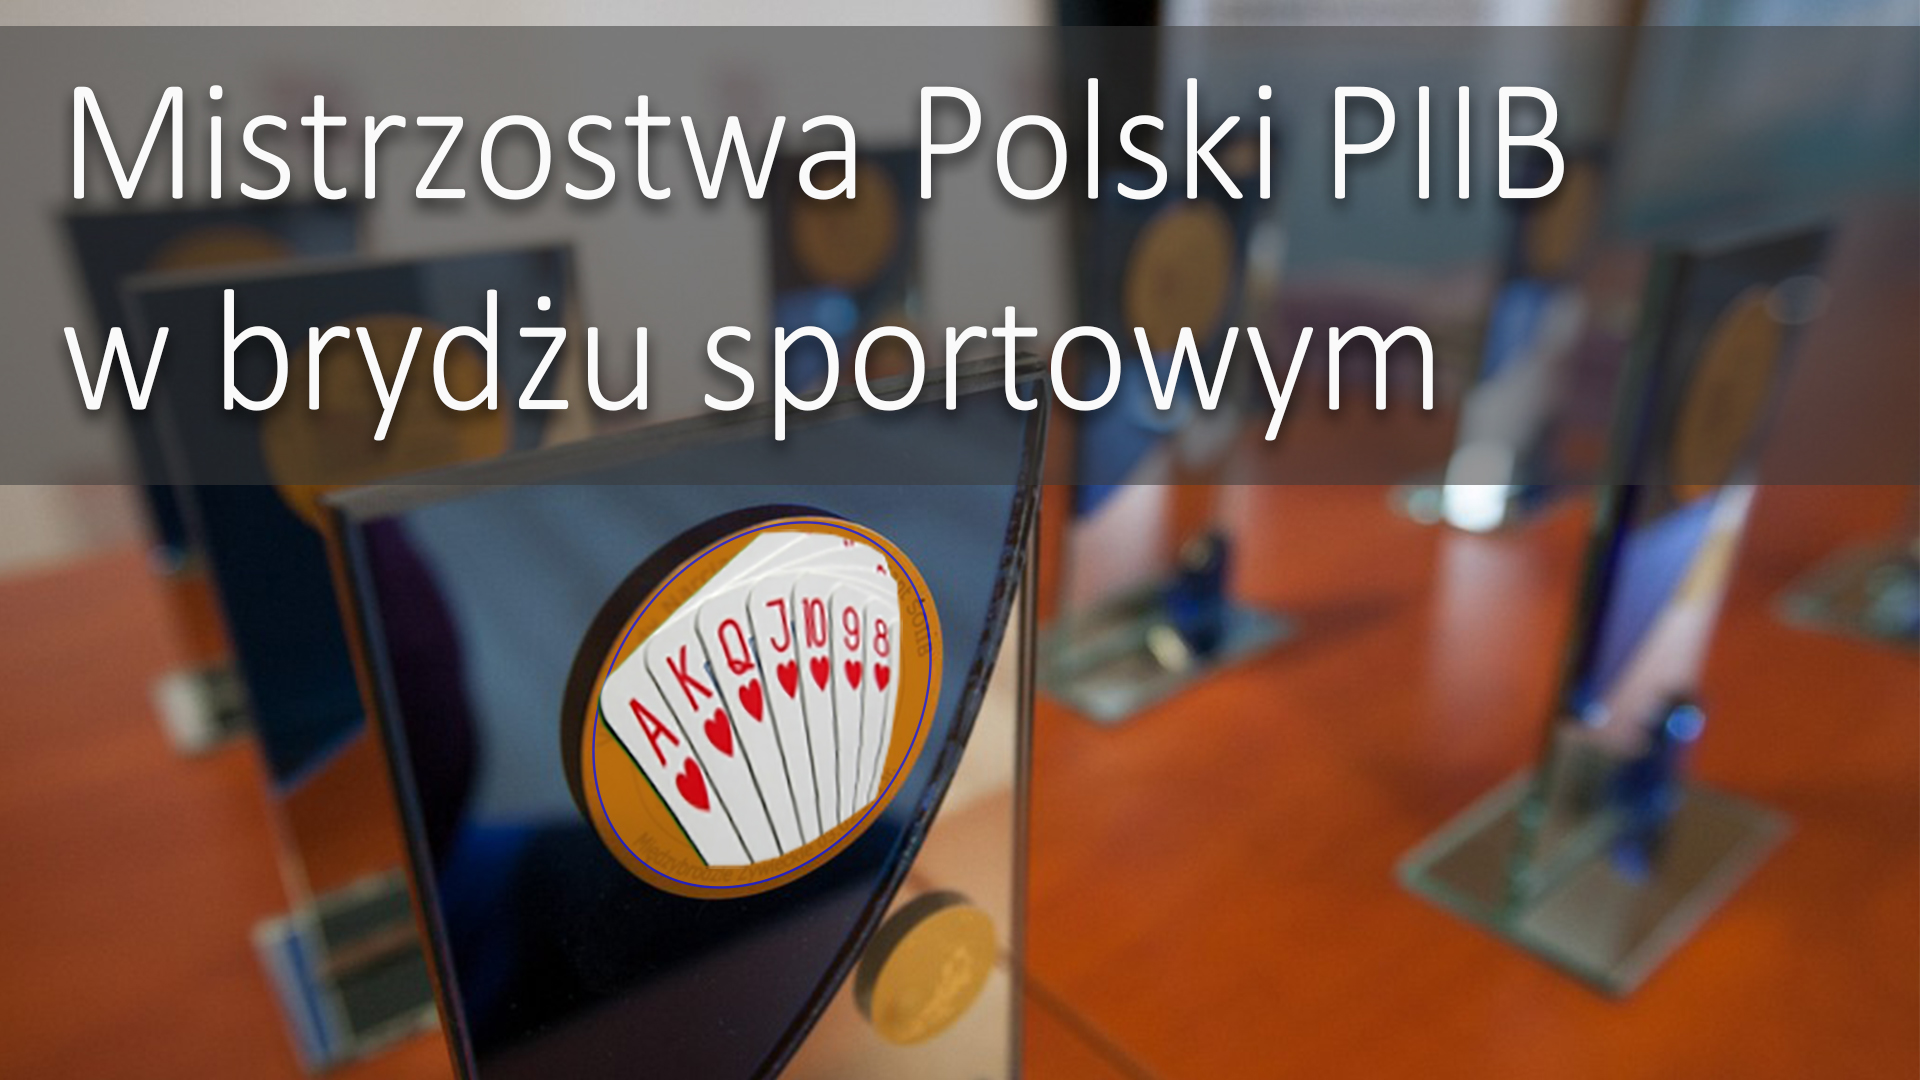 Zapraszamy do udziału w X Jubileuszowych Mistrzostwach Polski PIIB w brydżu sportowym pod Patronatem Honorowym Prezesa KR PIIB Mariusza Dobrzenieckiego.